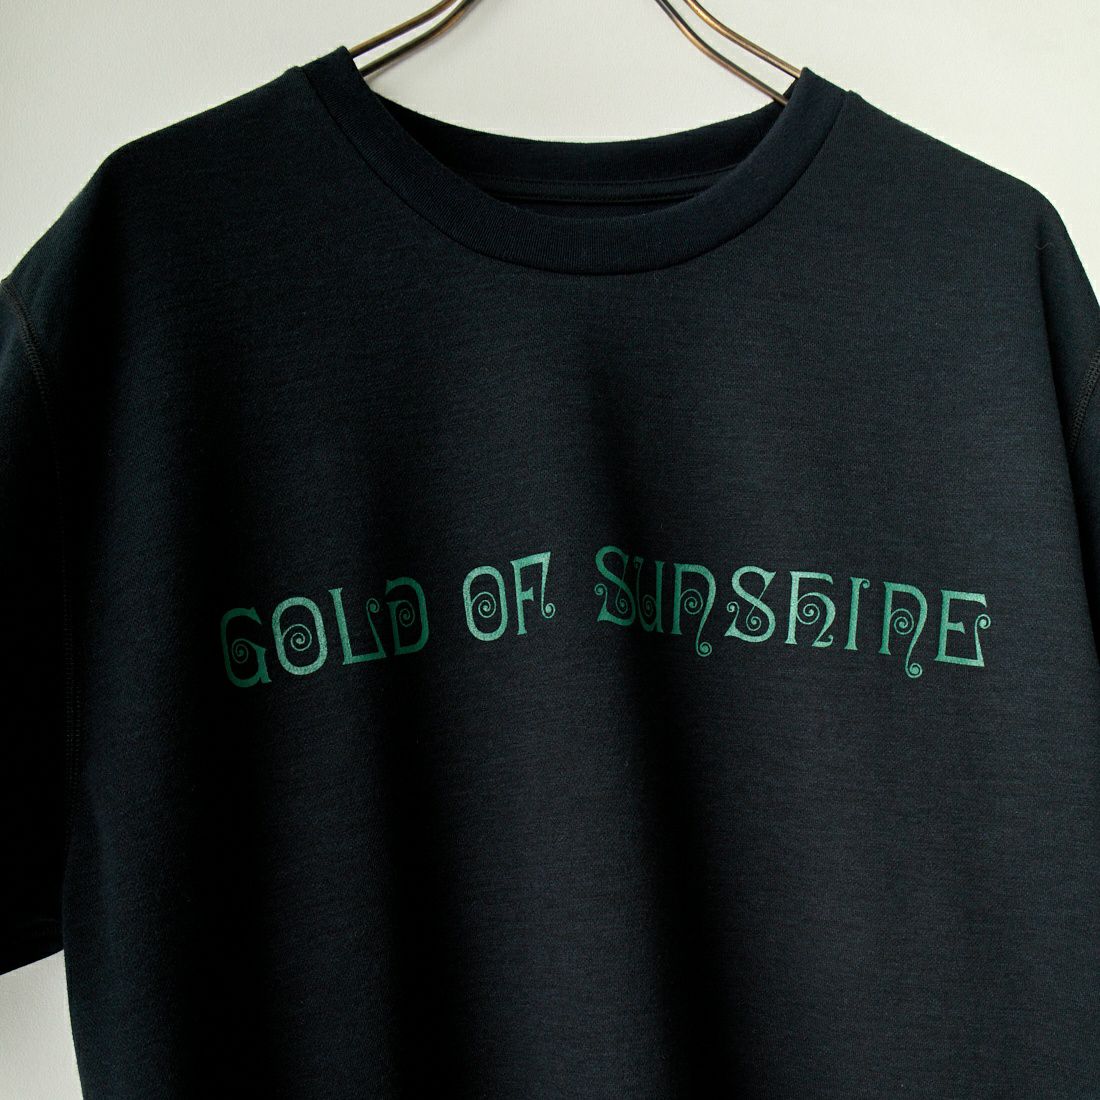 South2West8 [サウスツーウエストエイト] GOLD OF SUNSHINE クルーネックTシャツ [MR836] B BLACK